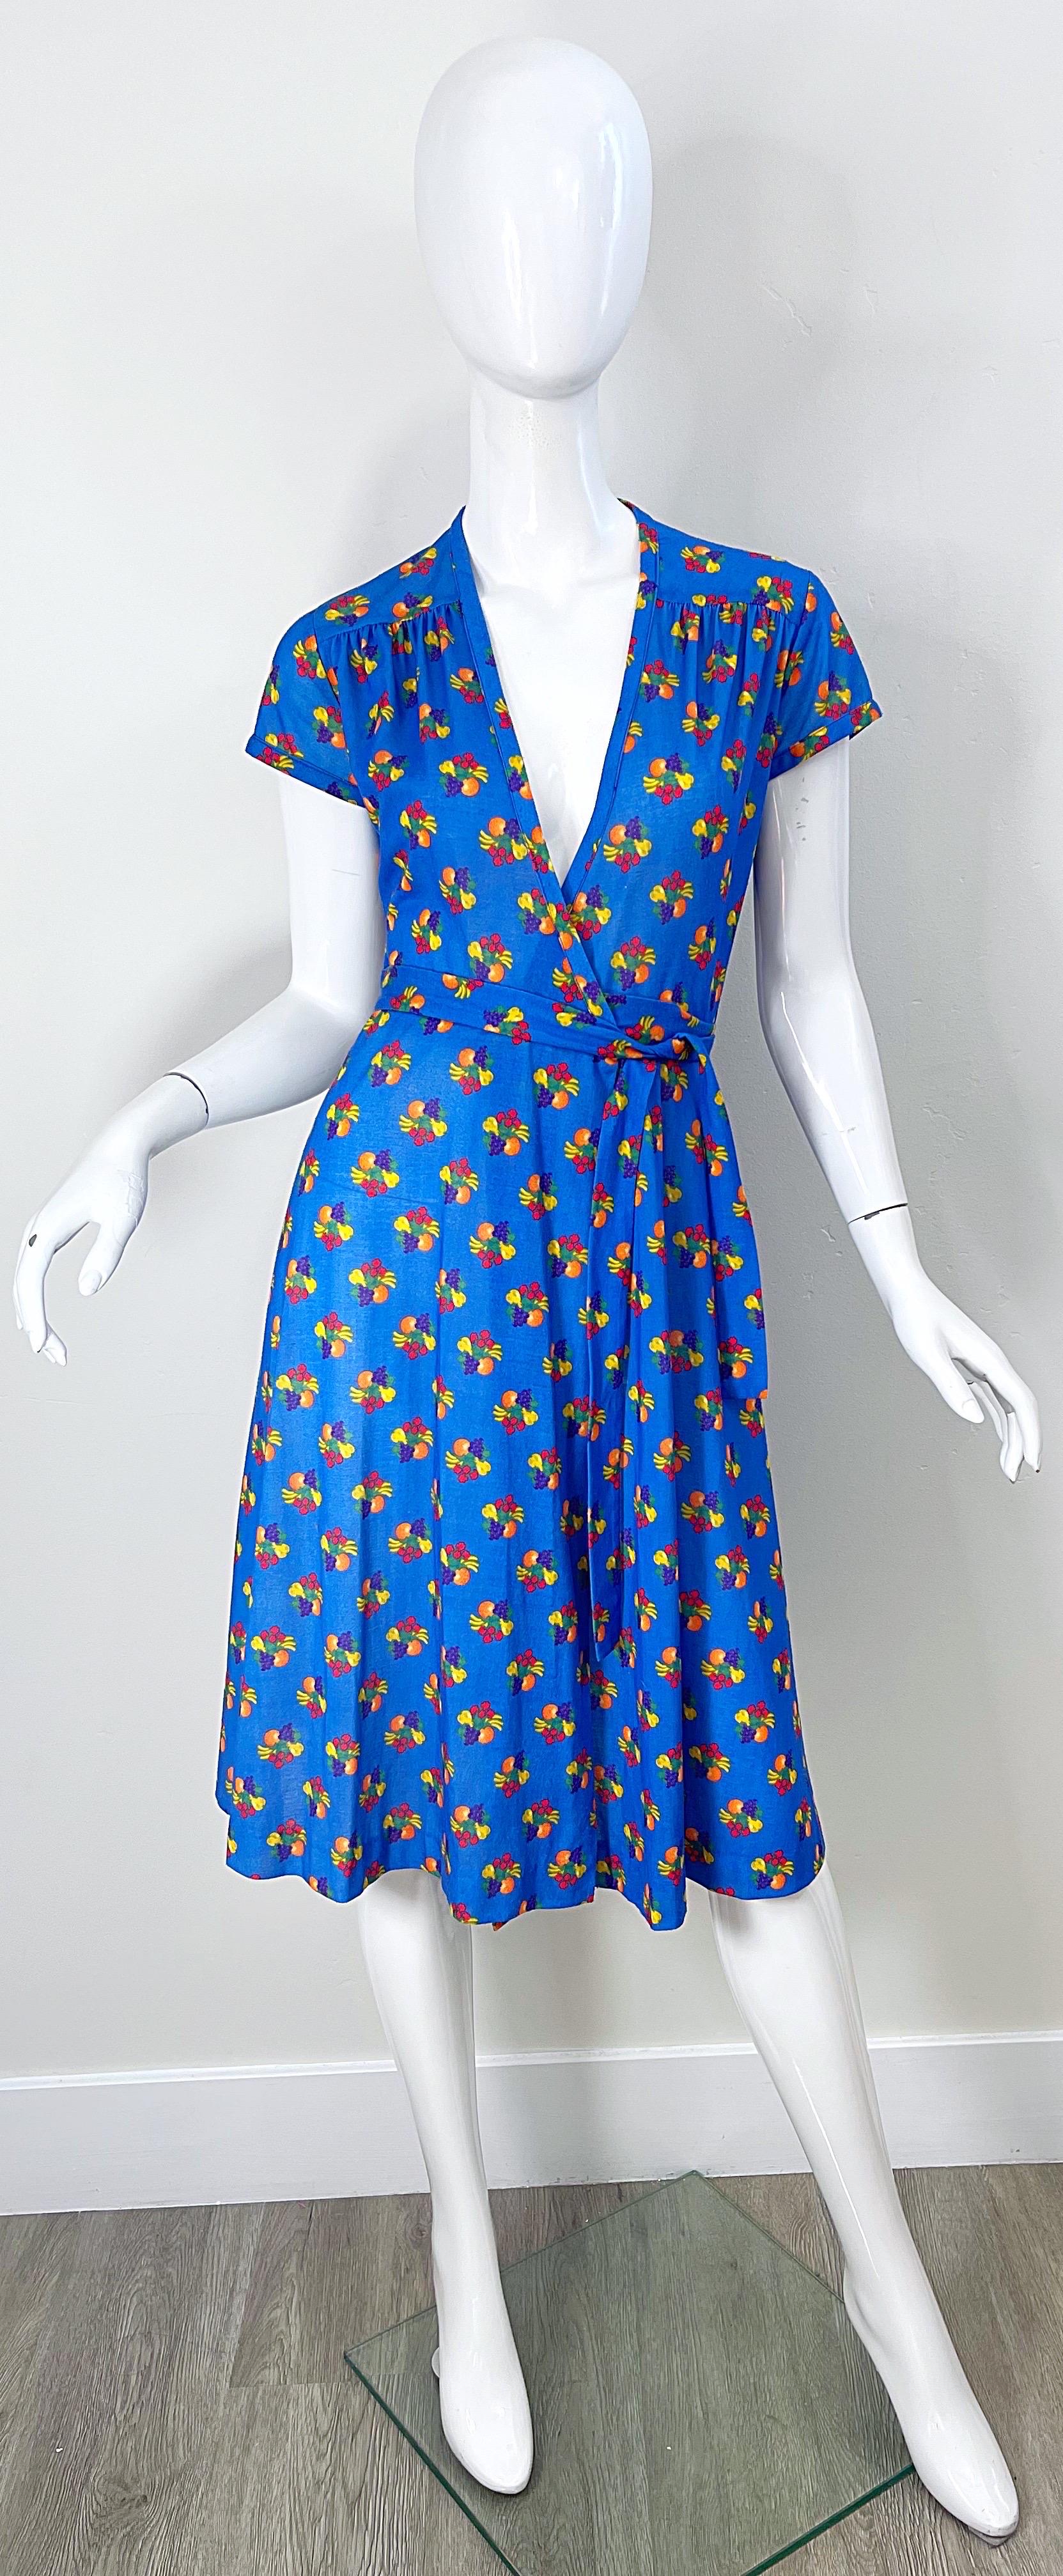 Superbe robe portefeuille de la fin des années 70 à imprimé fruits ! Le fond est d'un beau bleu vibrant. Des impressions de raisins violets, de citrons et de poires jaunes, d'oranges et de framboises sont omniprésentes. L'attache à la taille